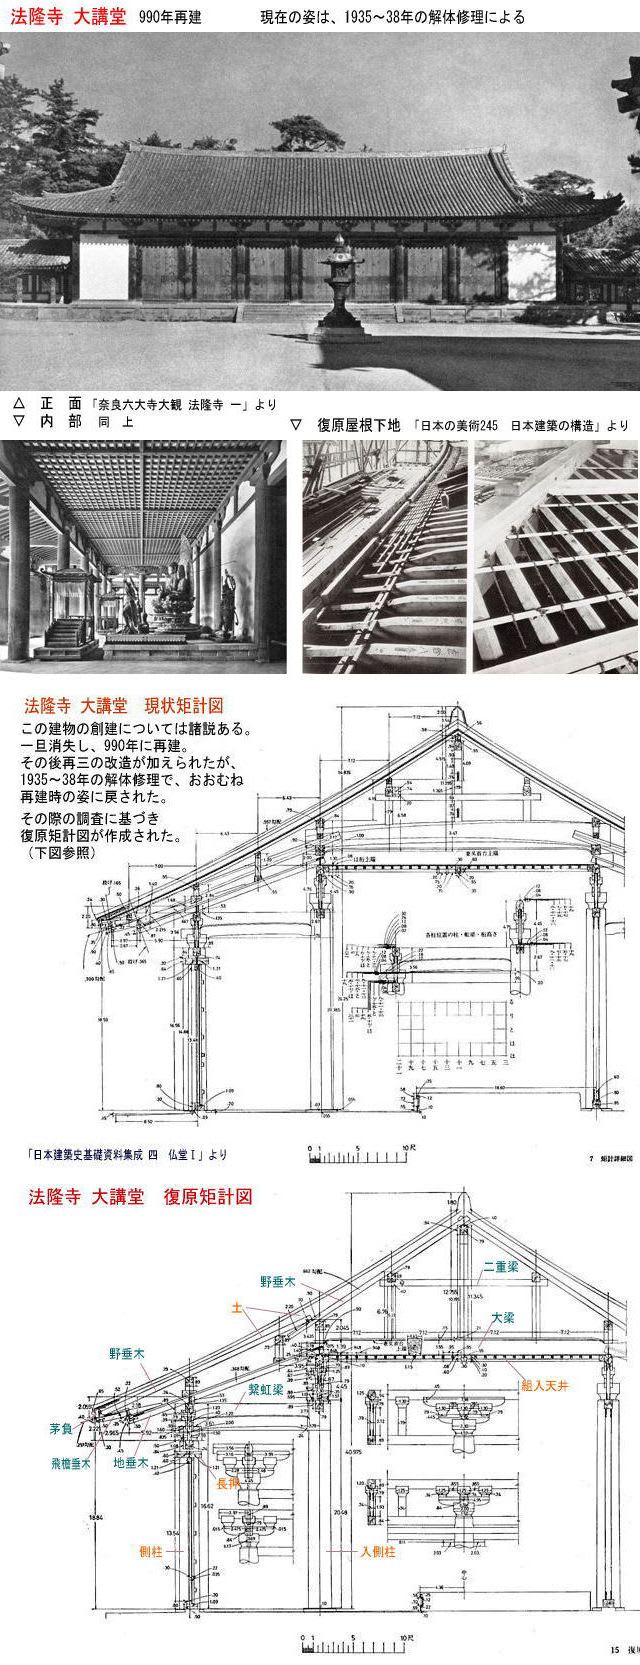 日本の建築技術の展開 ７ 中世の屋根の二重構造 建築をめぐる話 つくることの原点を考える 下山眞司